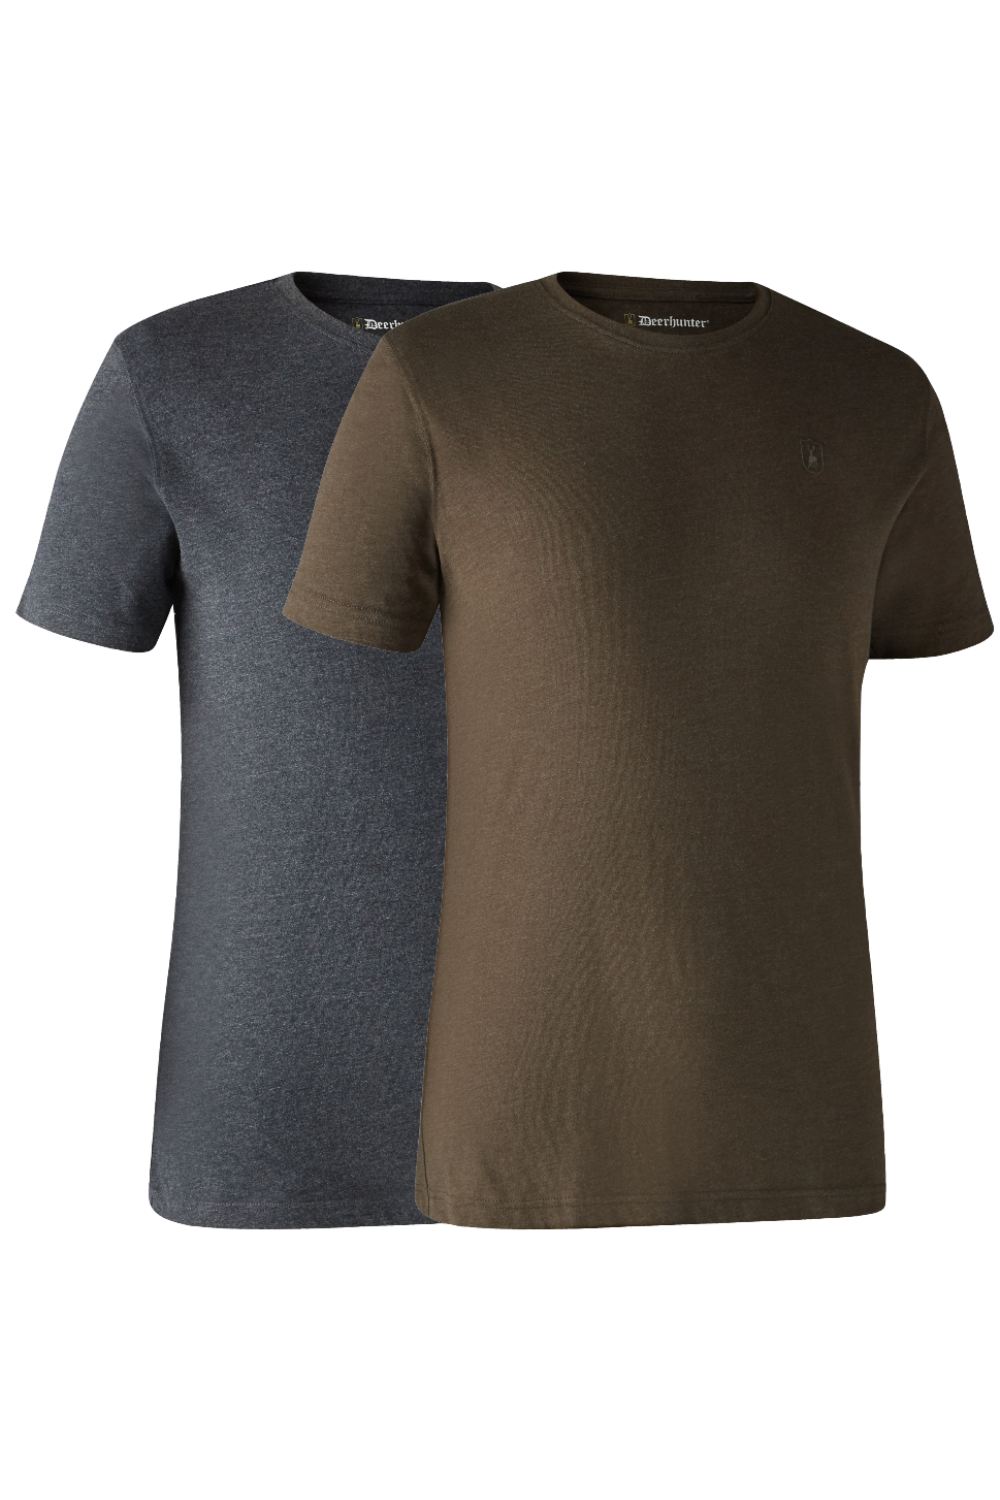 Deerhunter Basic 2-Pack T-Shirt In Brown Leaf Melange